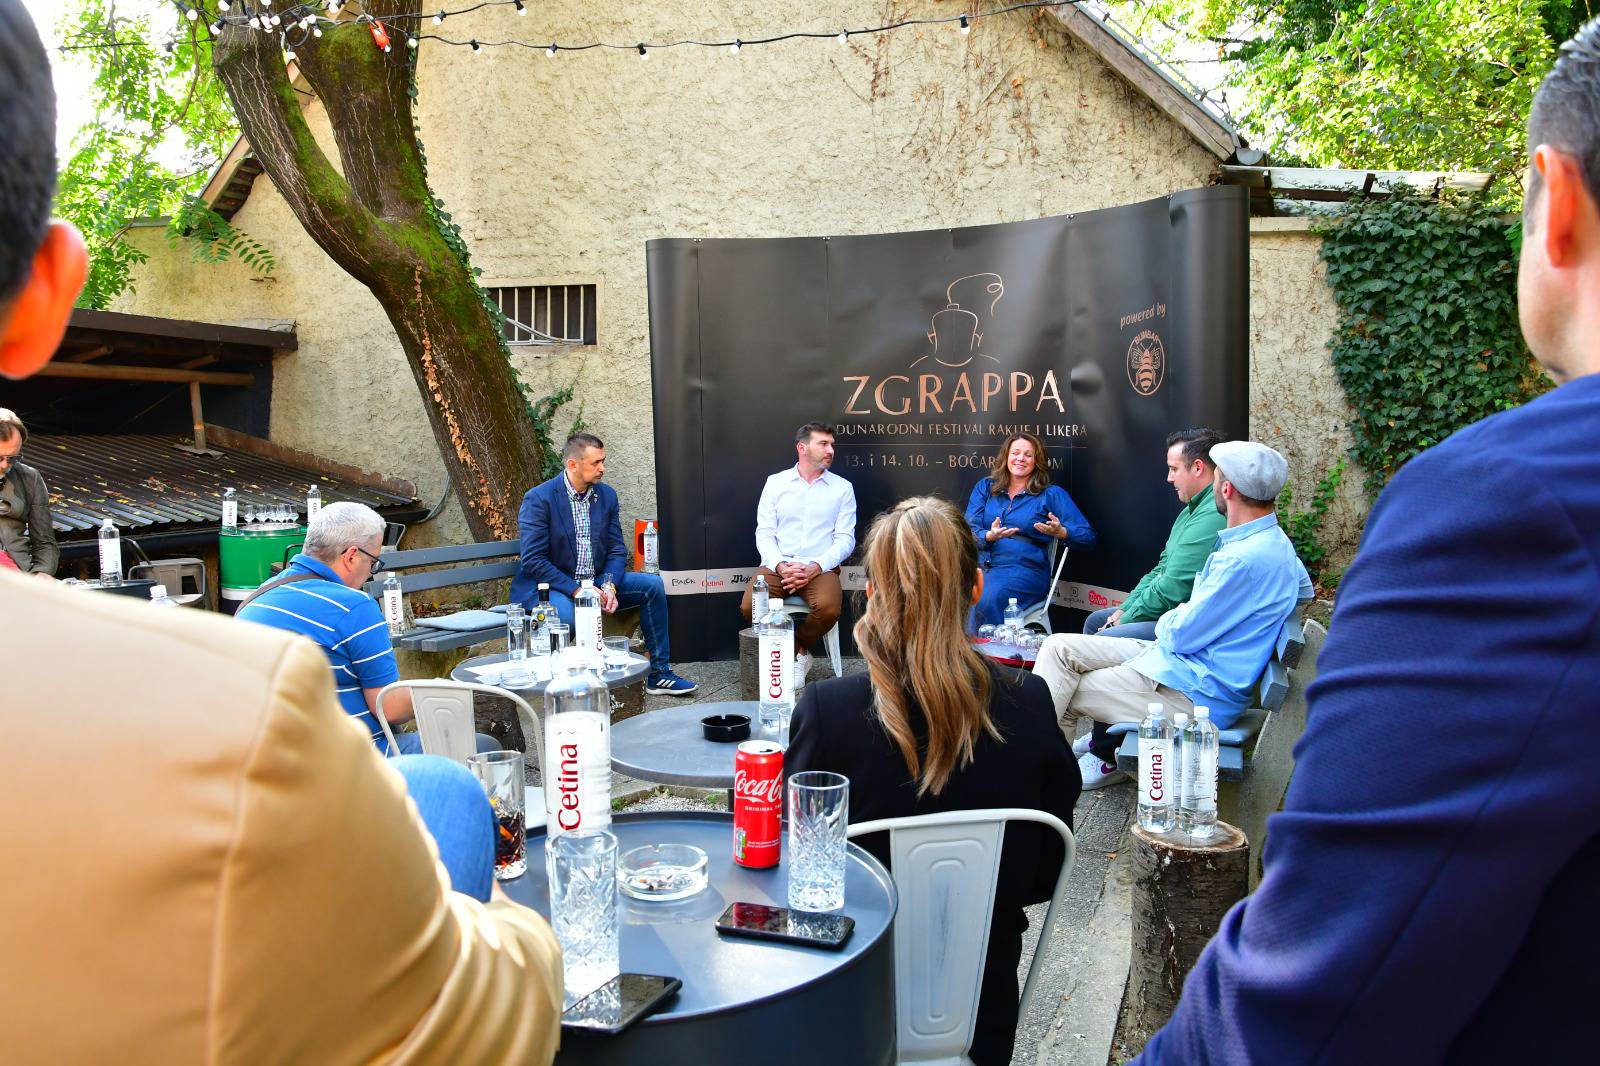 Prvi festival rakija i likera u Boćarskom domu: ZGrappa vraća rakiju na velika vrata